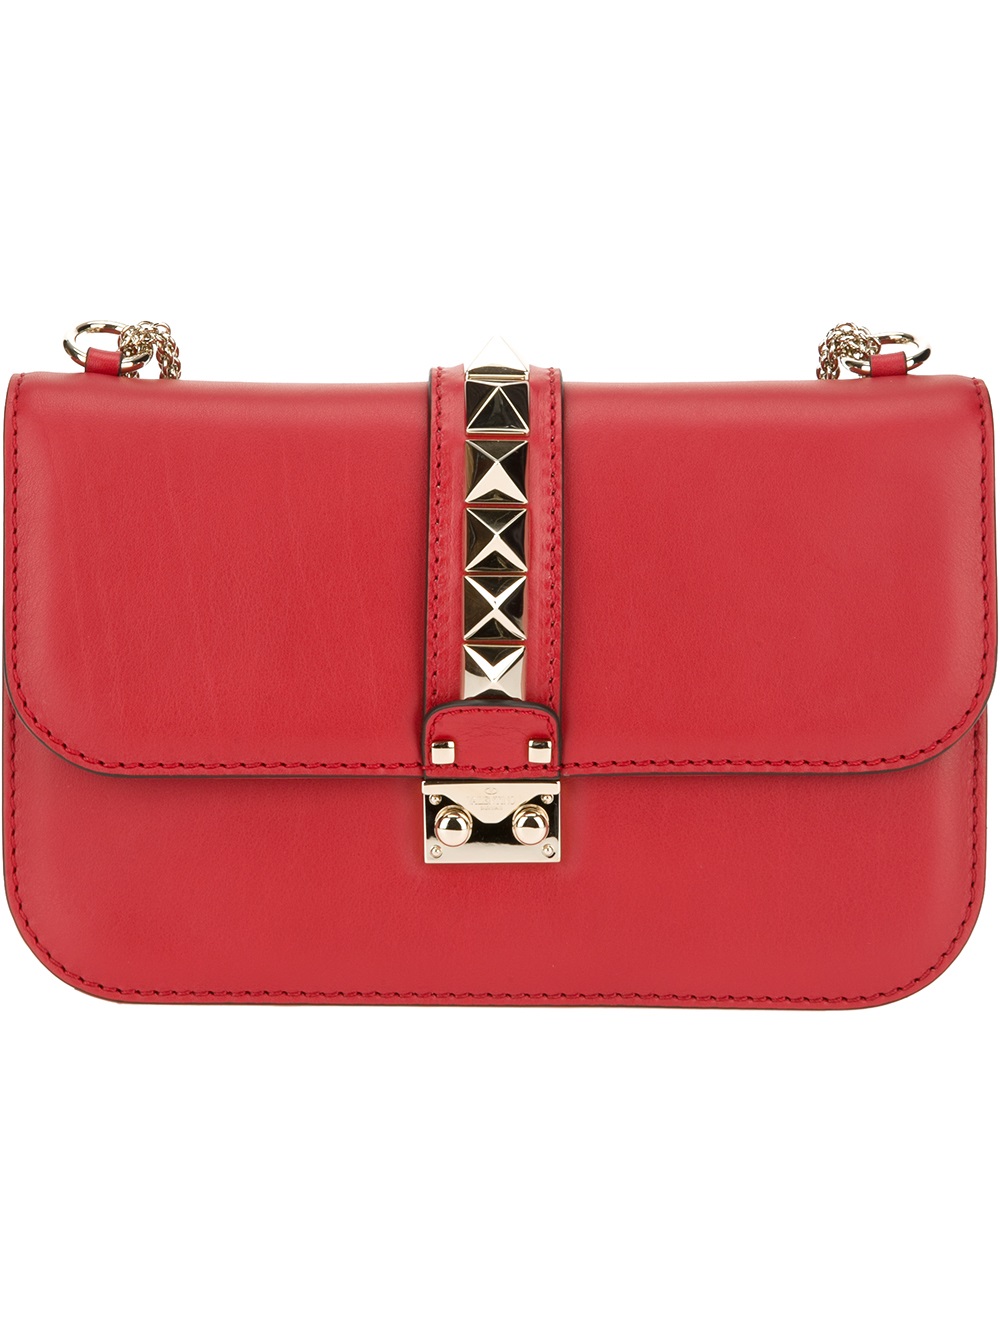 Lyst - Valentino Rockstud Shoulder Bag in Red